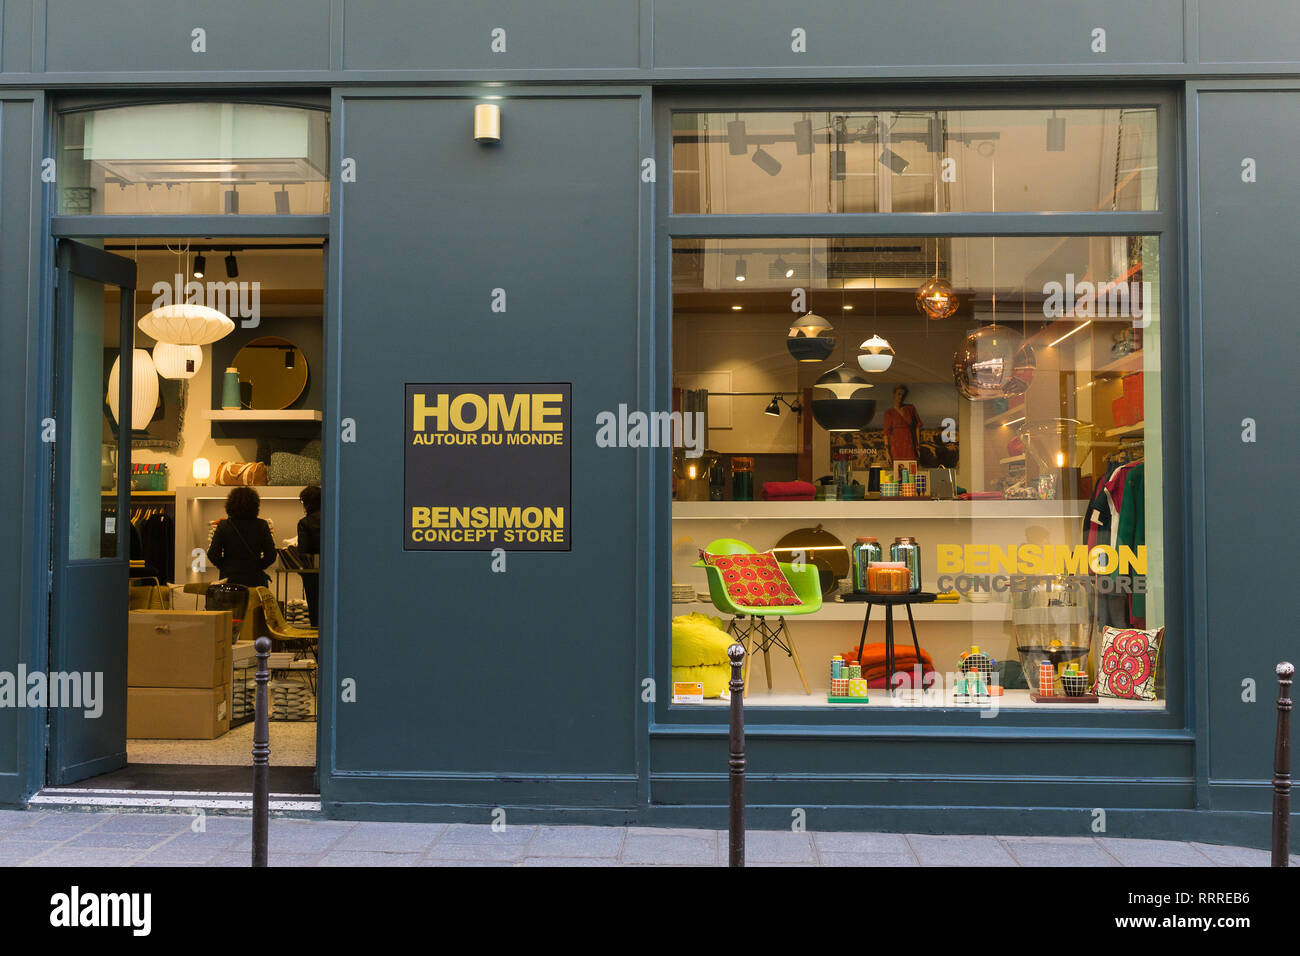 Bensimon Home Autour Du Monde - concept store in Marais district of Paris, France. Stock Photo